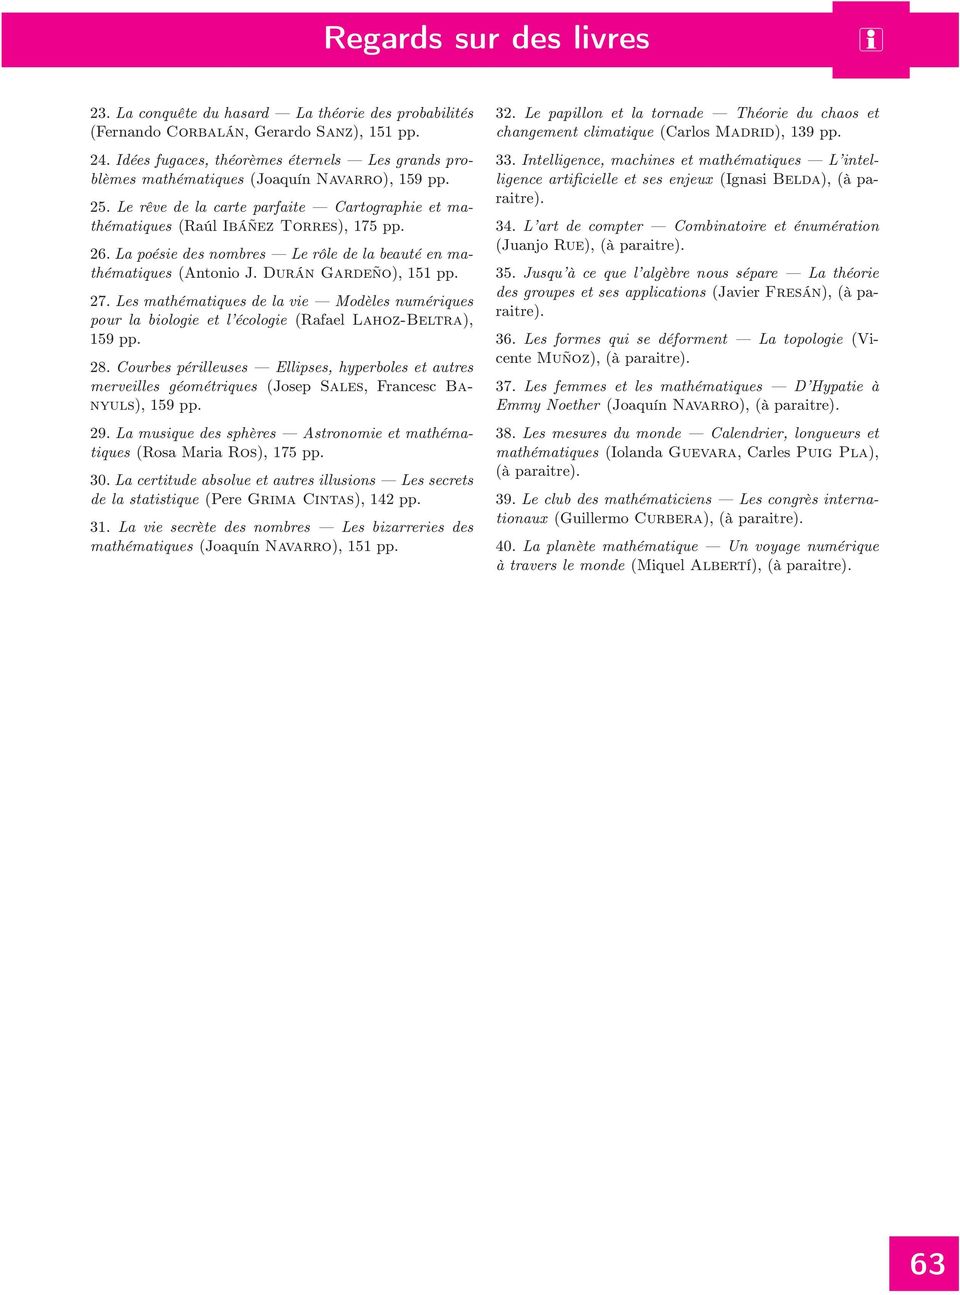 La poése des nombres Le rôle de la beauté en mathématques (Antono J. Durán Gardeño), 151 pp. 27. Les mathématques de la ve Modèles numérques pour la bologe et l écologe (Rafael Lahoz-Beltra), 28.